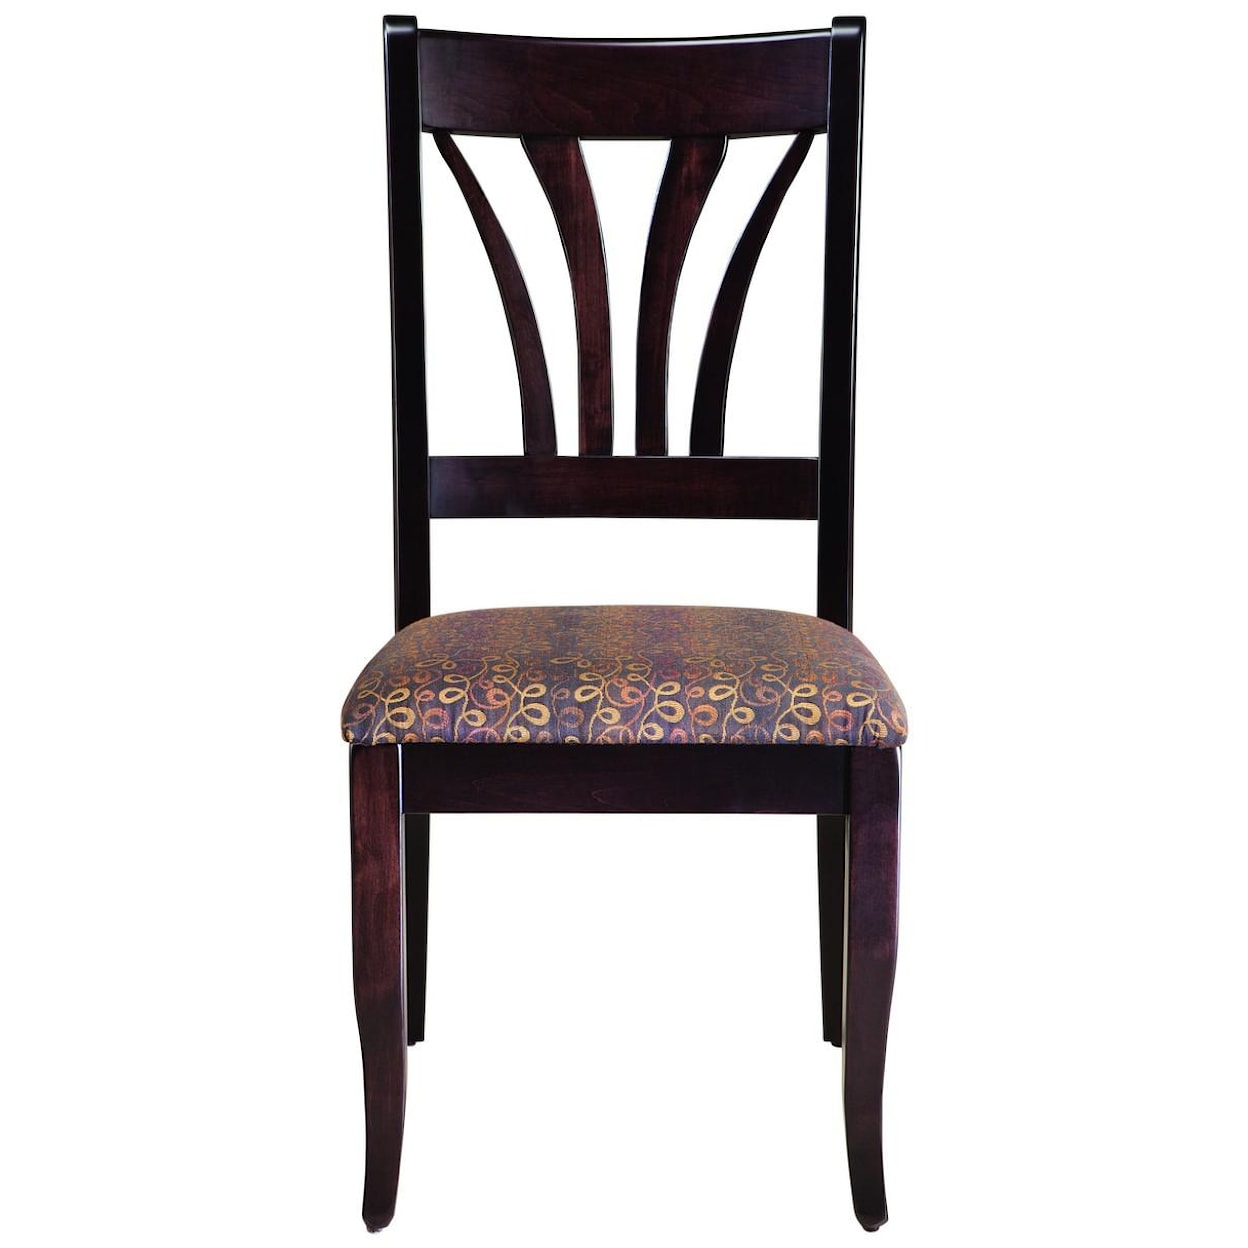 Mavin Hartford  Customizable Side Chair